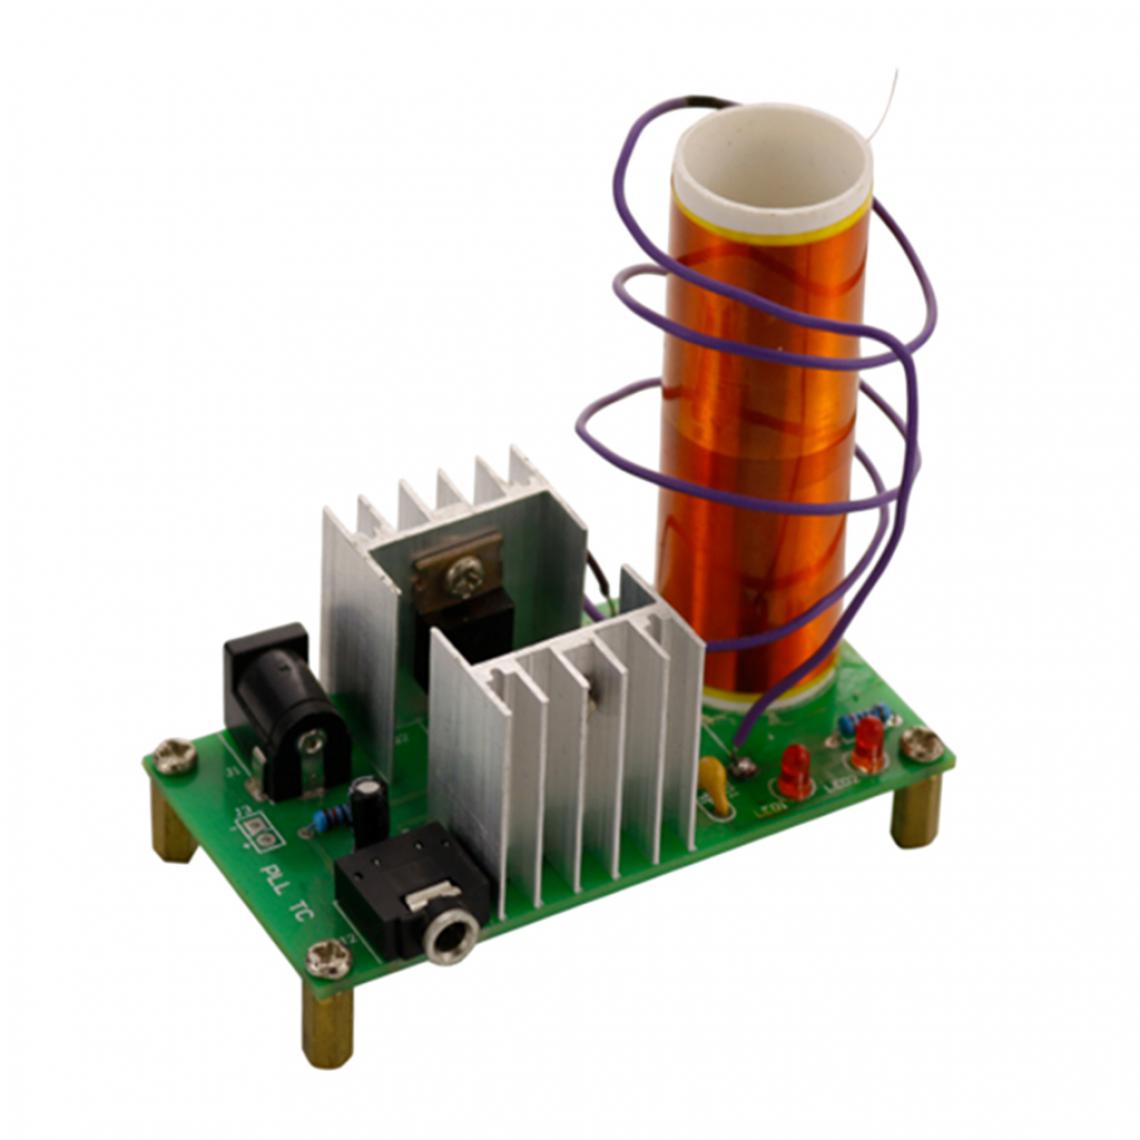 marque generique - Tesla Coil Circuit Board Diy Kit Briquet Diy Electronic Kit Parts - Ampli